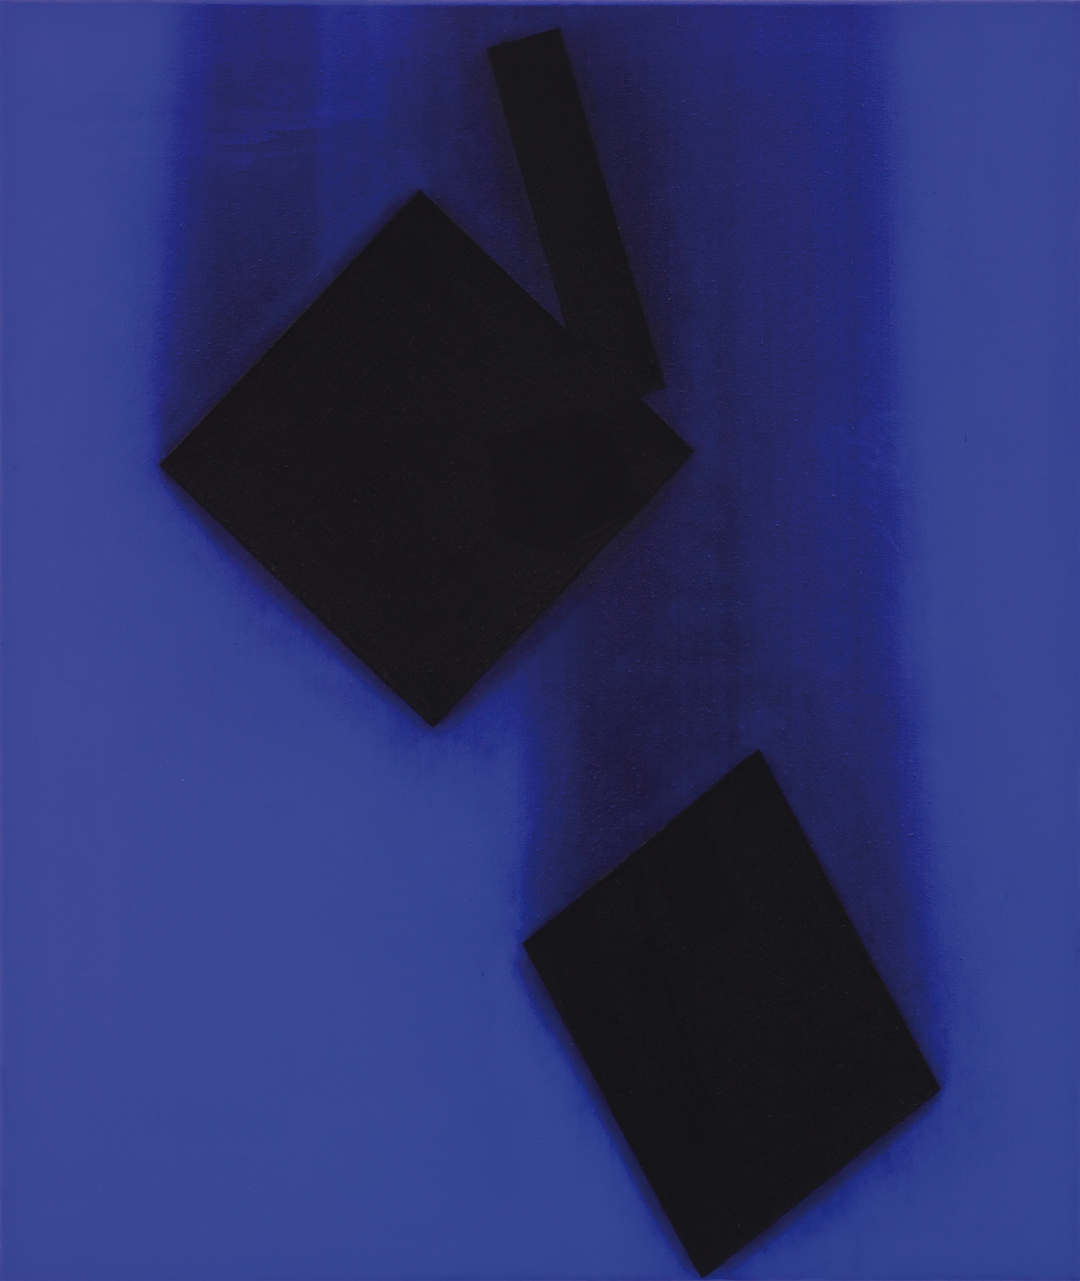 Kunstwerk »Rekonstruktion eines Zufalls vom 16.12.98 und mit blau« von Lienhard von Monkiewitsch (Vorschau)